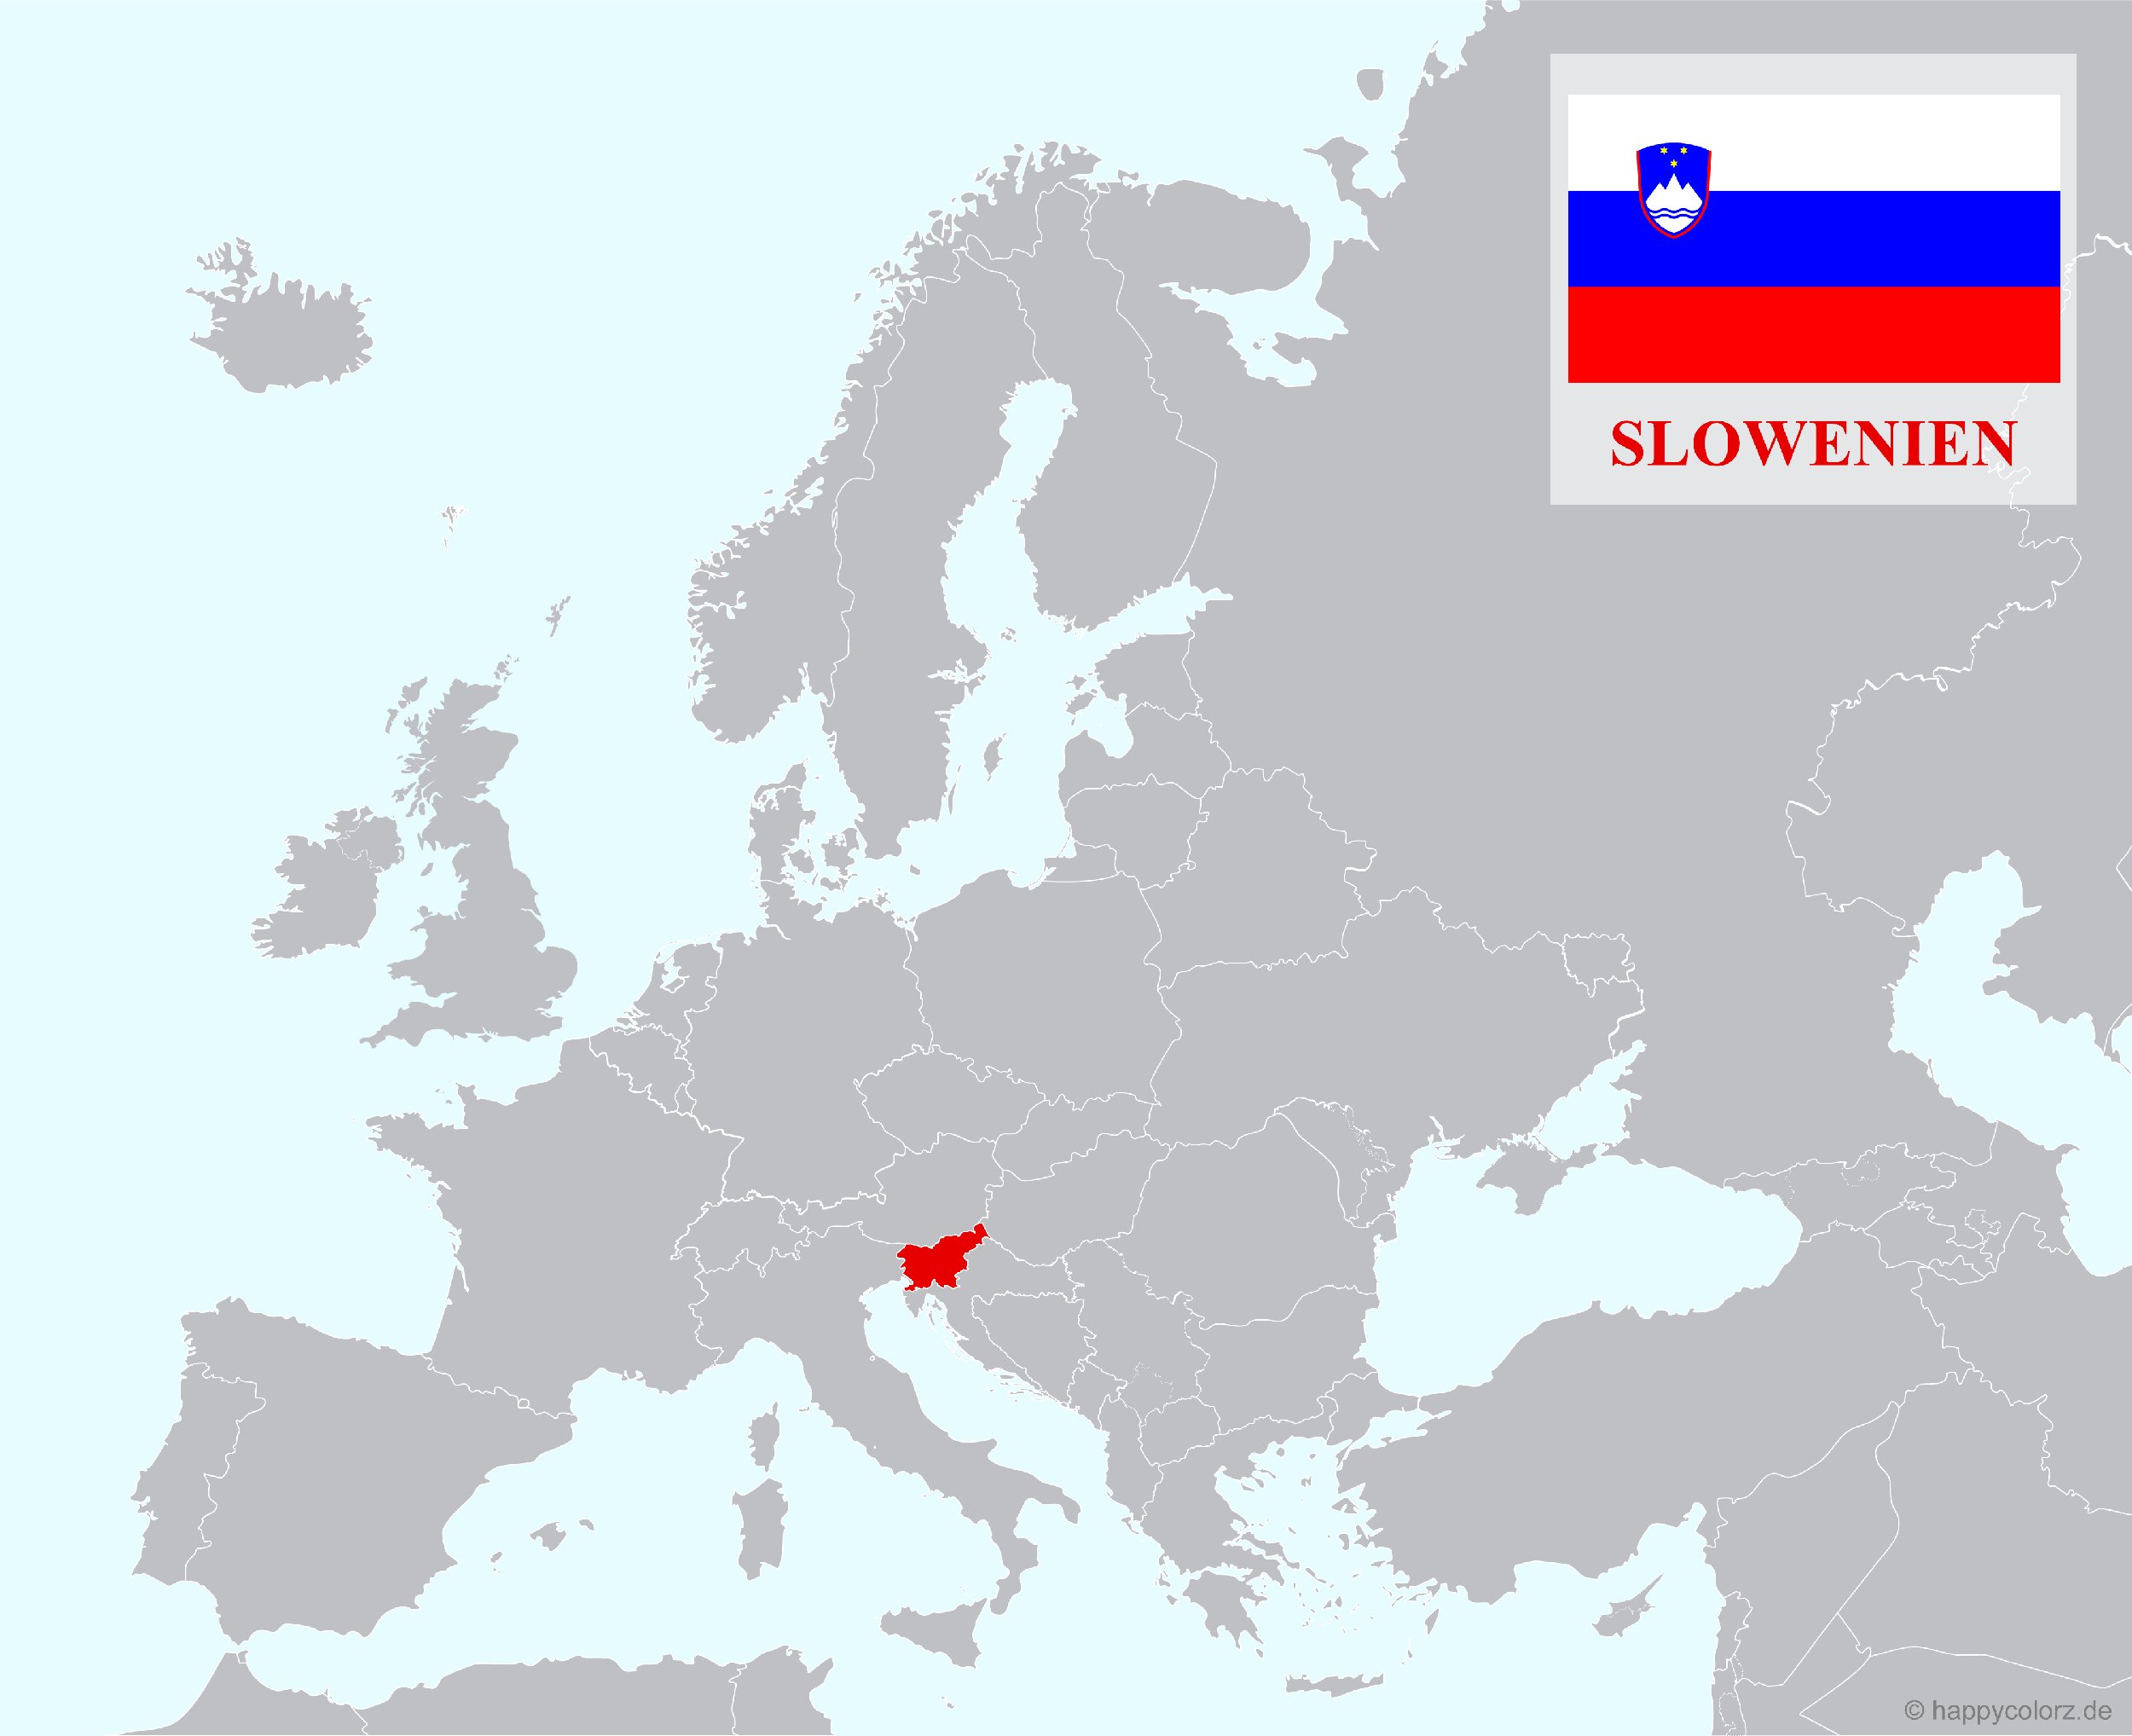 Europakarte mit Slowenien als hervorgehobenes Land